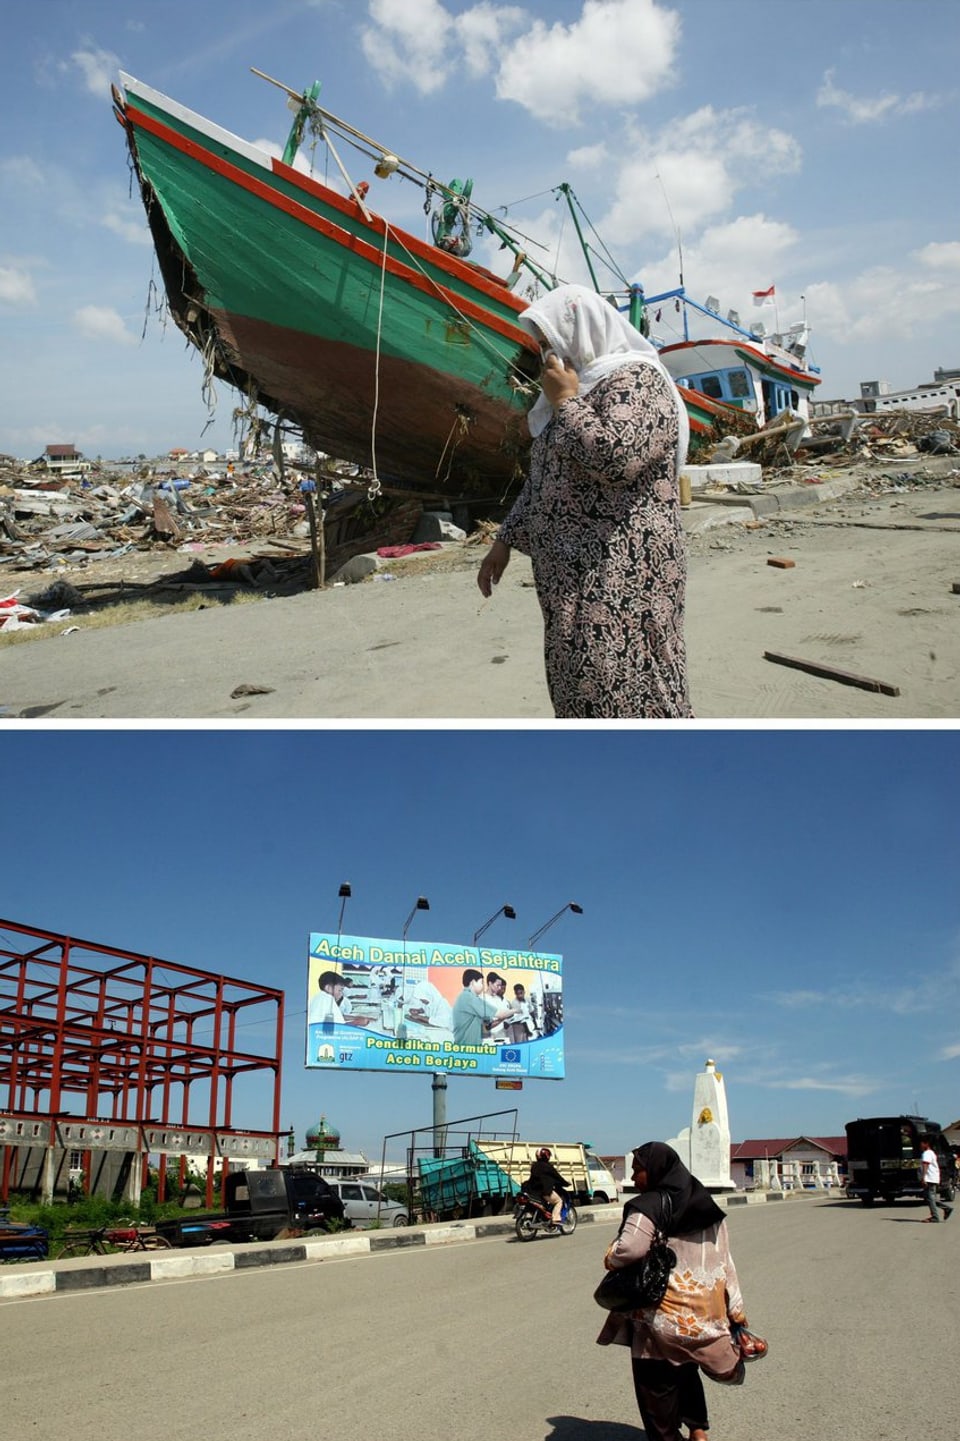 Ein Fischerschiffsteht an land in Banda Aceh. Die Flutwelle hat es angespült. Das Bild darunter zeigt den gleichen Ort fünf Jahre später. (keystone)